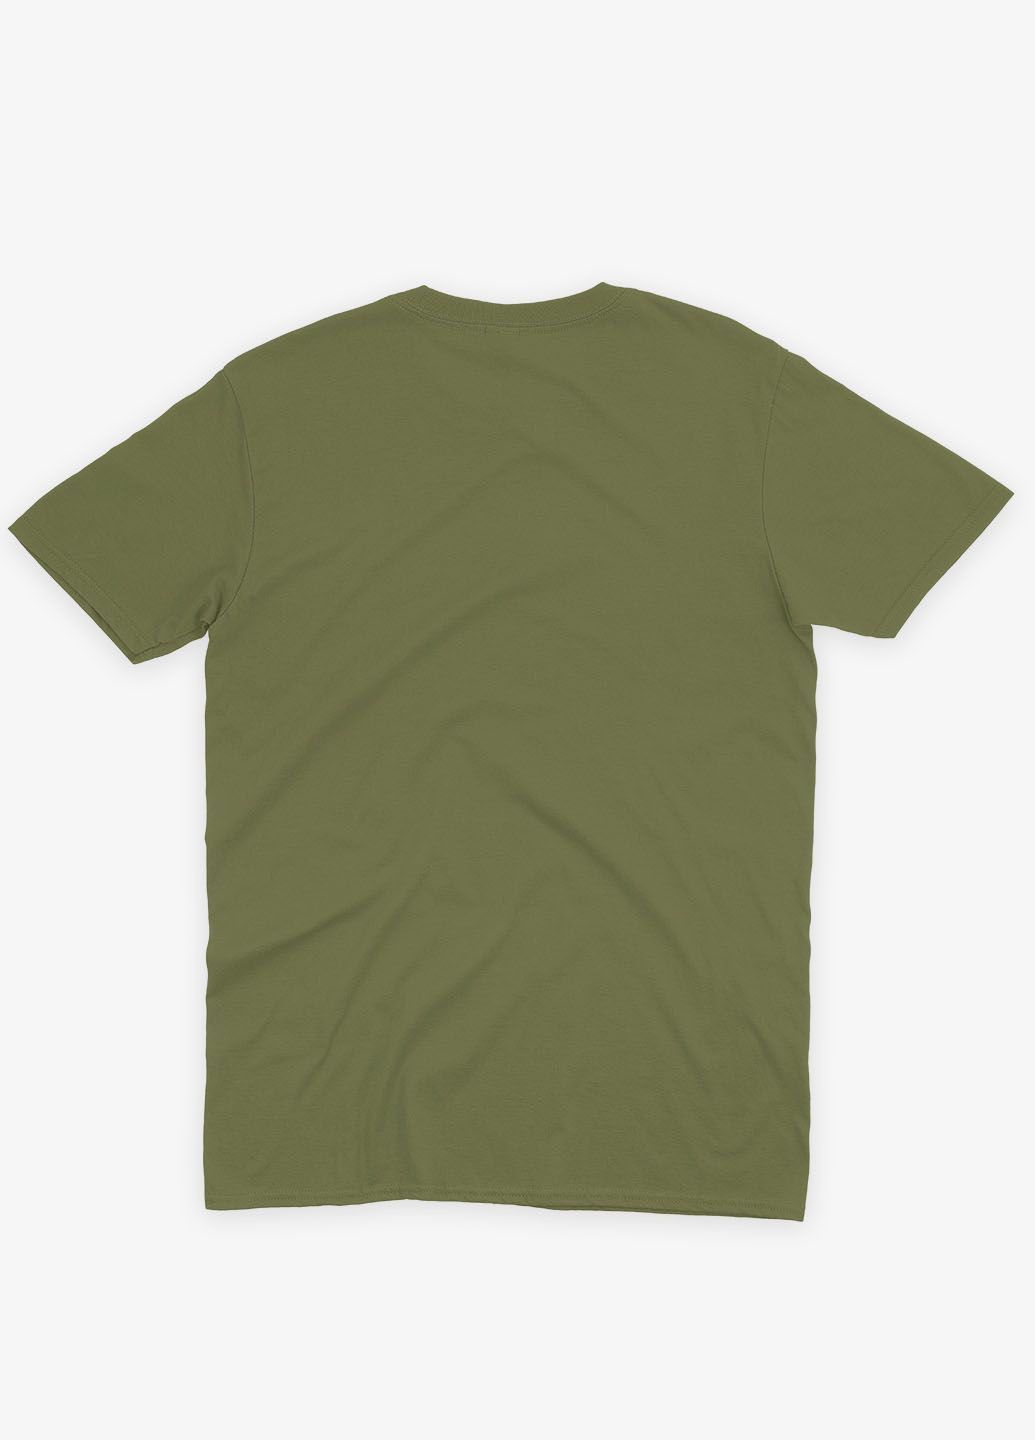 Хаки (оливковая) мужская футболка с принтом супергероя - халк (ts001-1-hgr-006-018-007) Modno